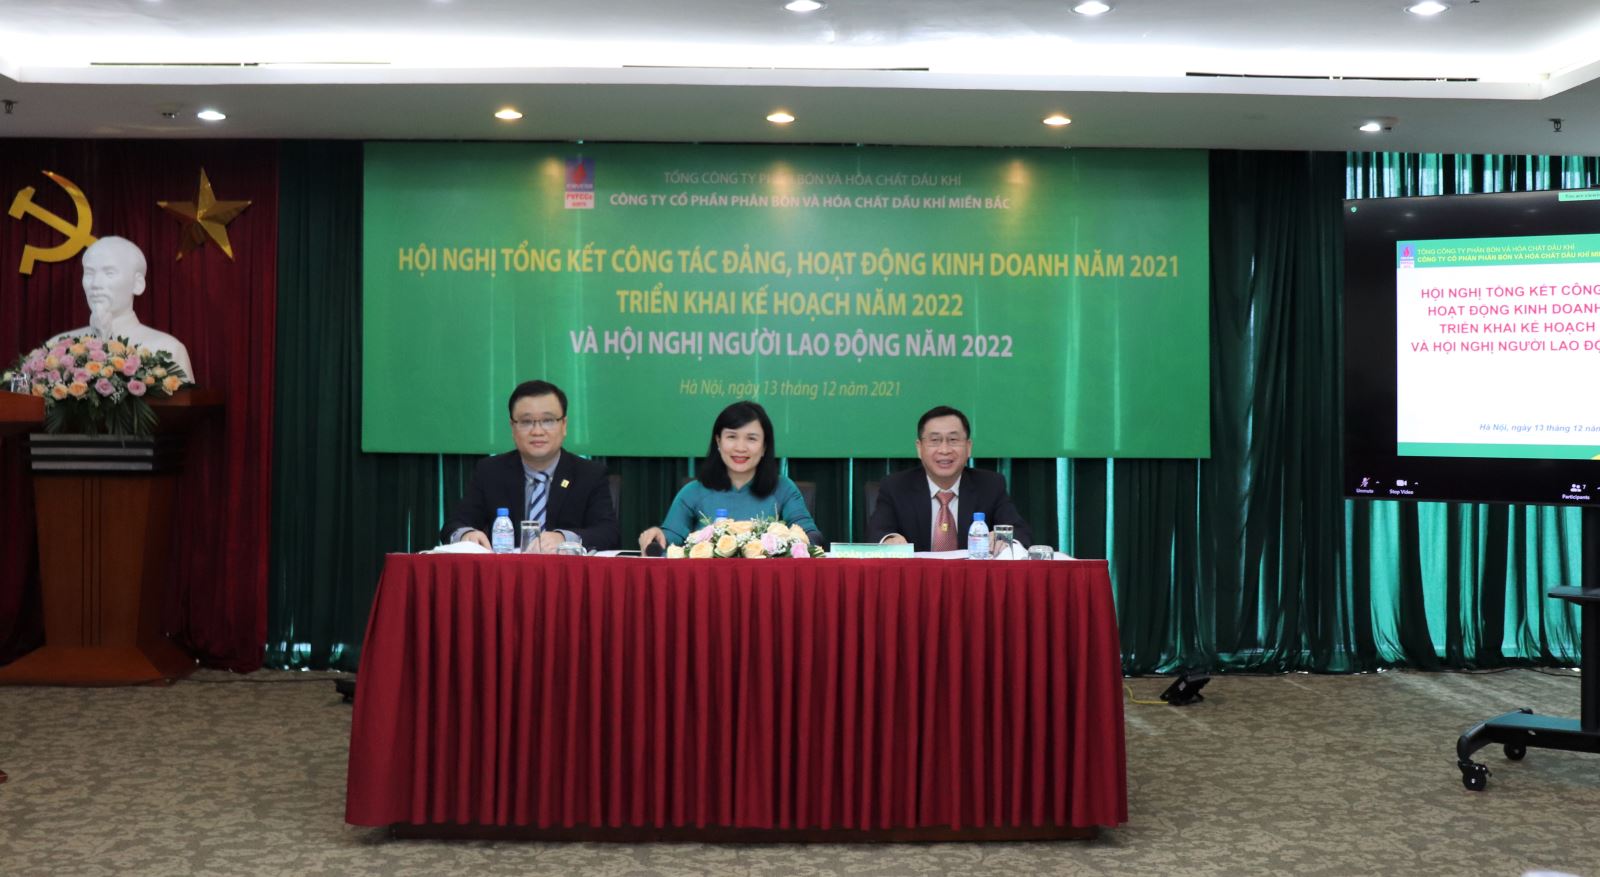 PVFCCo North tổ chức thành công Hội nghị Tổng kết công tác Đảng, hoạt động kinh doanh năm 2021, triển khai kế hoạch năm 2022 và Hội nghị người lao động năm 2022